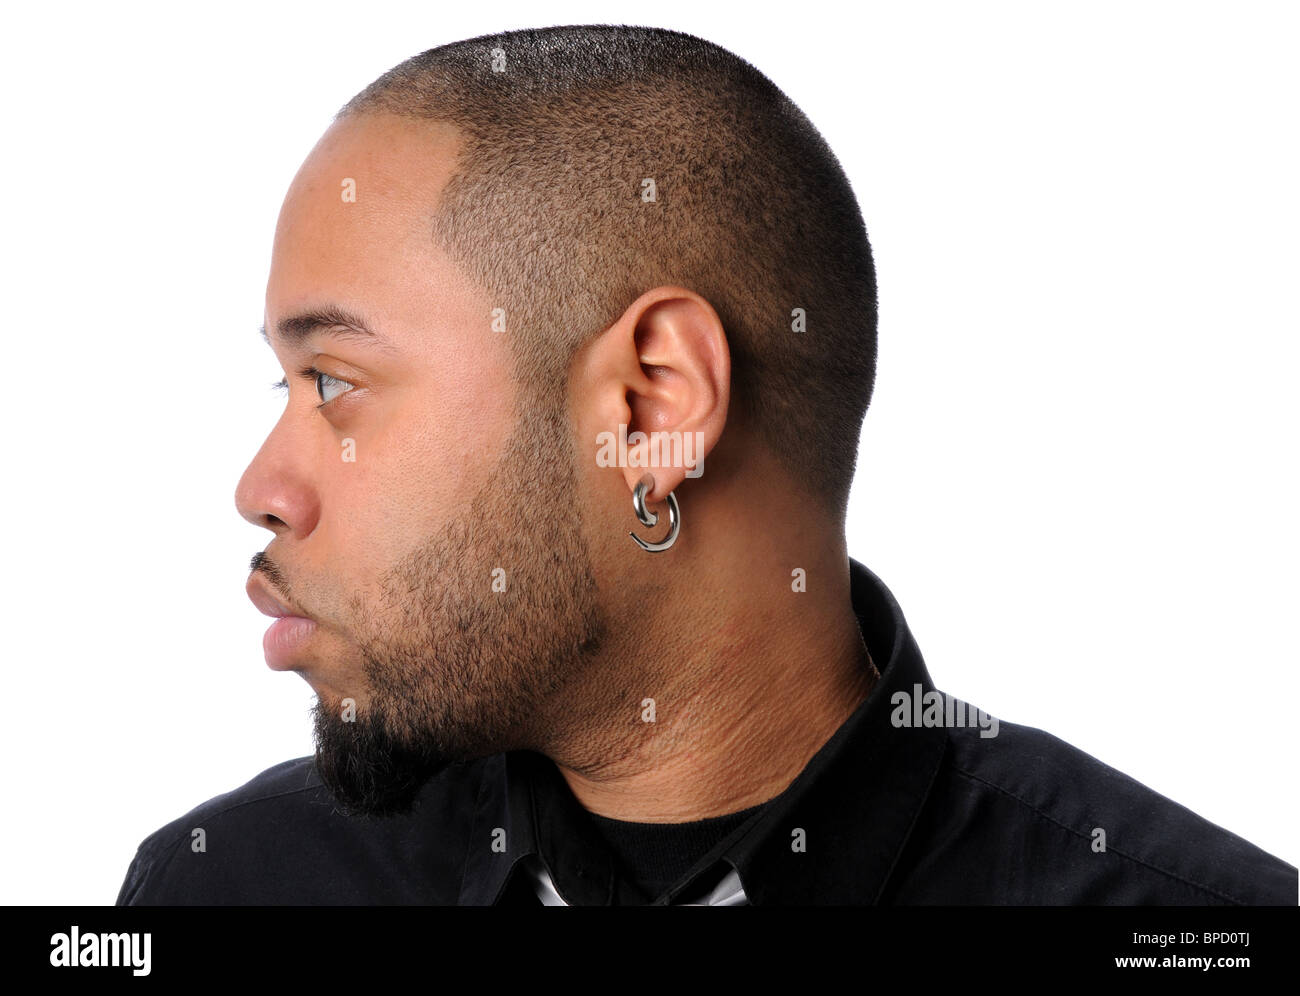 Profilbildnis des afroamerikanischen Menschen isoliert auf weißem Hintergrund Stockfoto